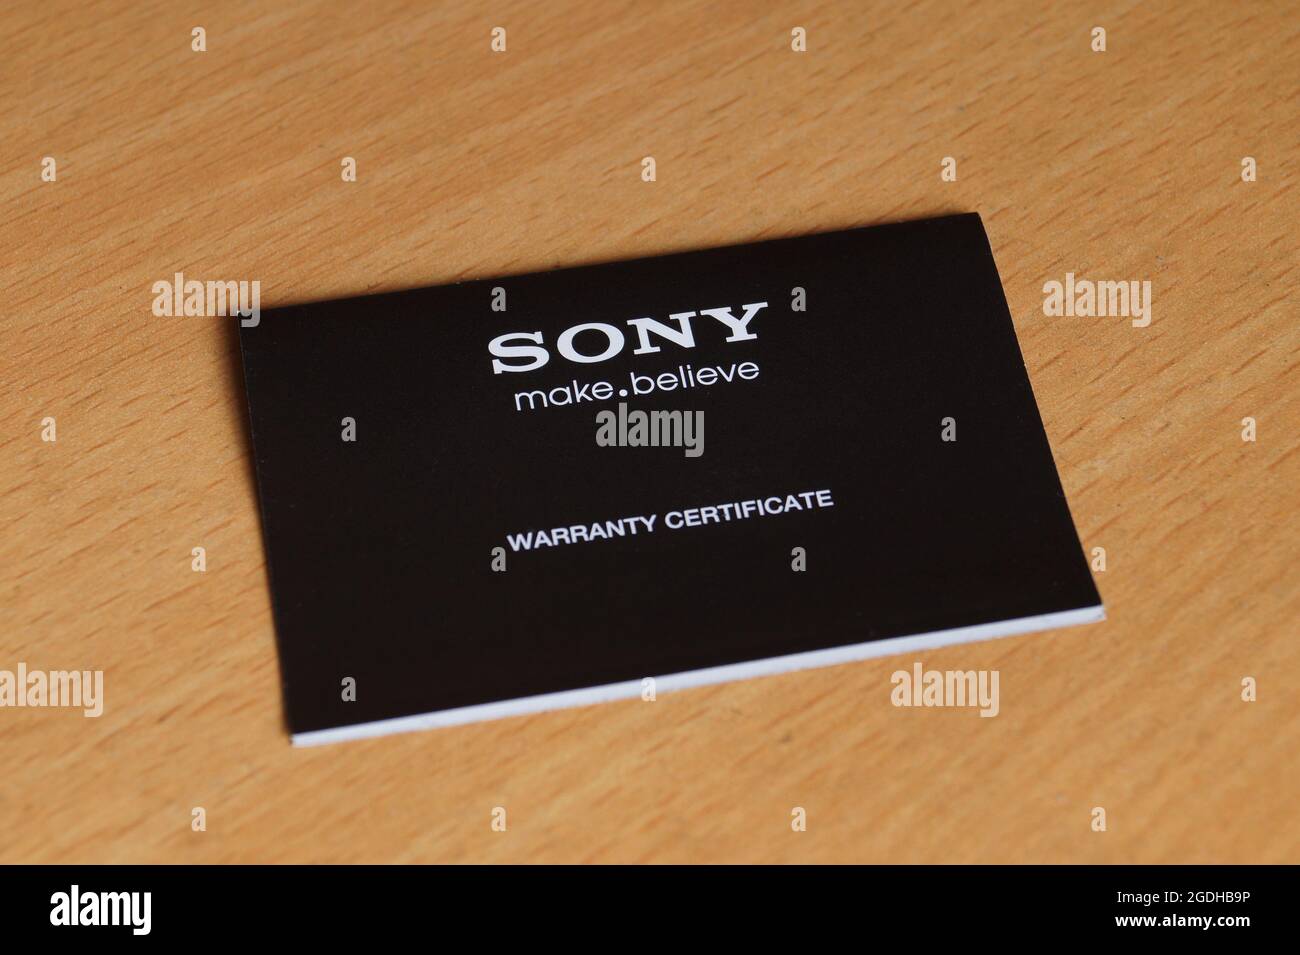 Kerala, India - 08-07-2021: Sony warranty card on the table Stock Photo